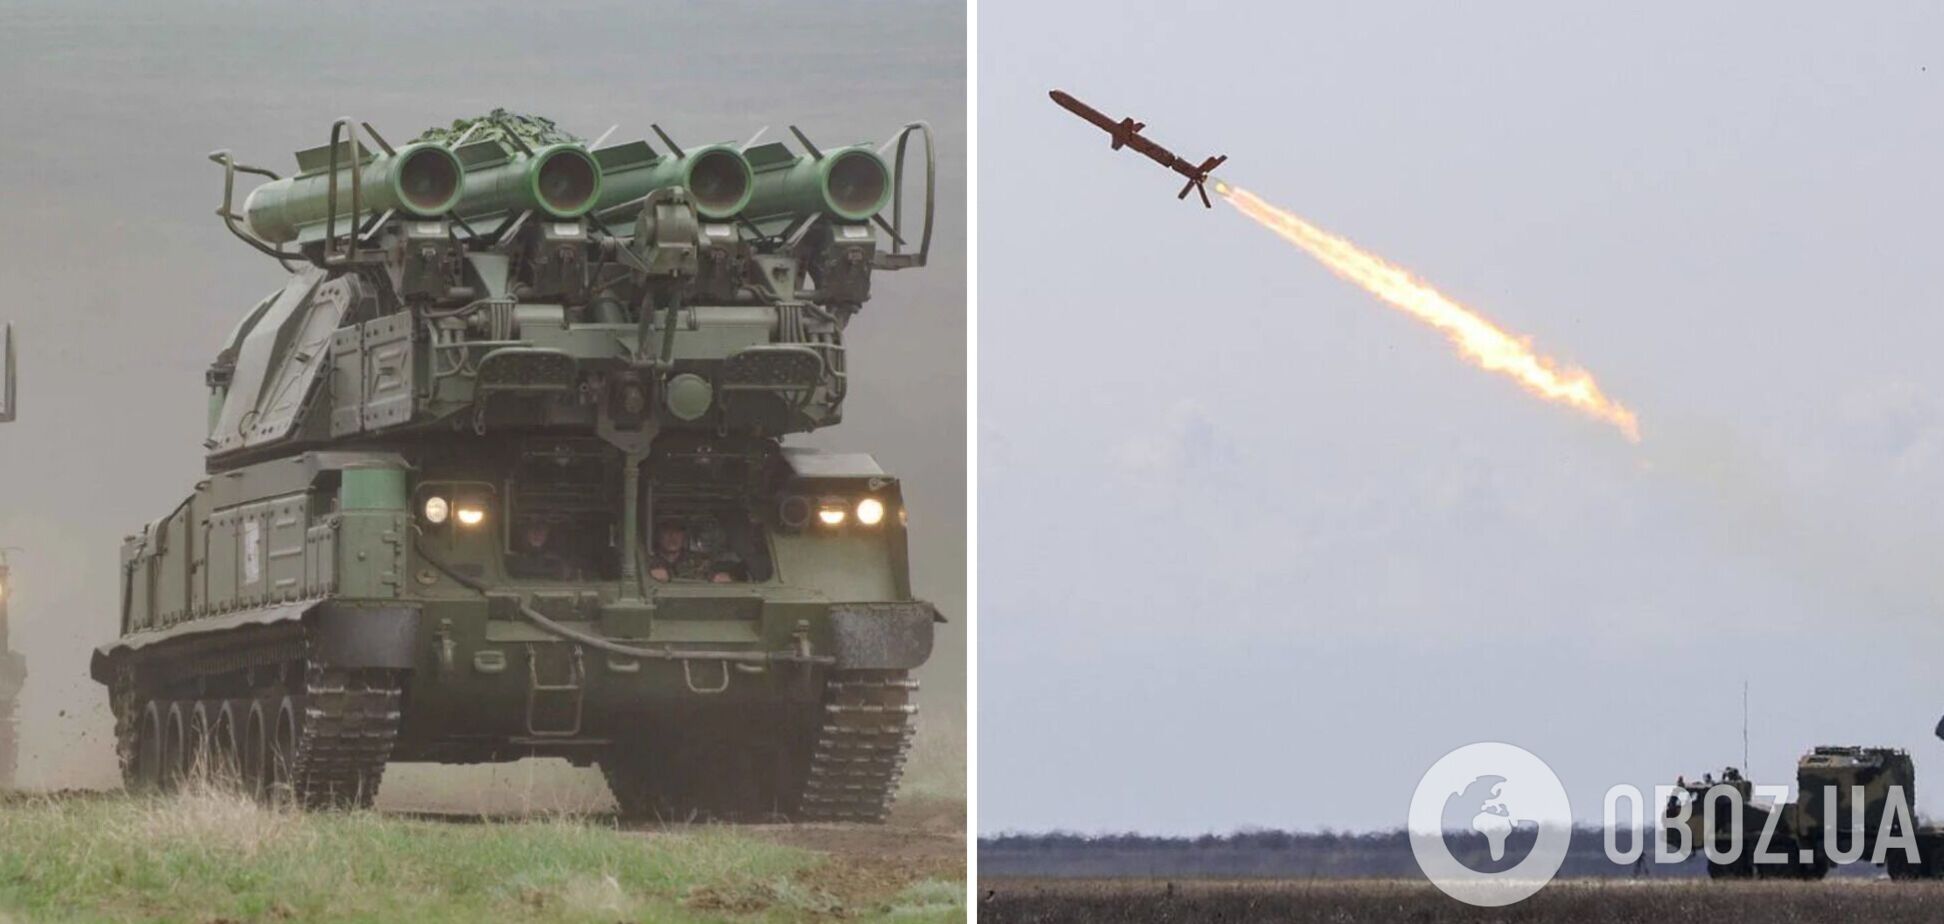 'Сохраняем спокойствие и веру в ВСУ': Залужный заявил об эффективной работе украинских систем ПВО и ПРО